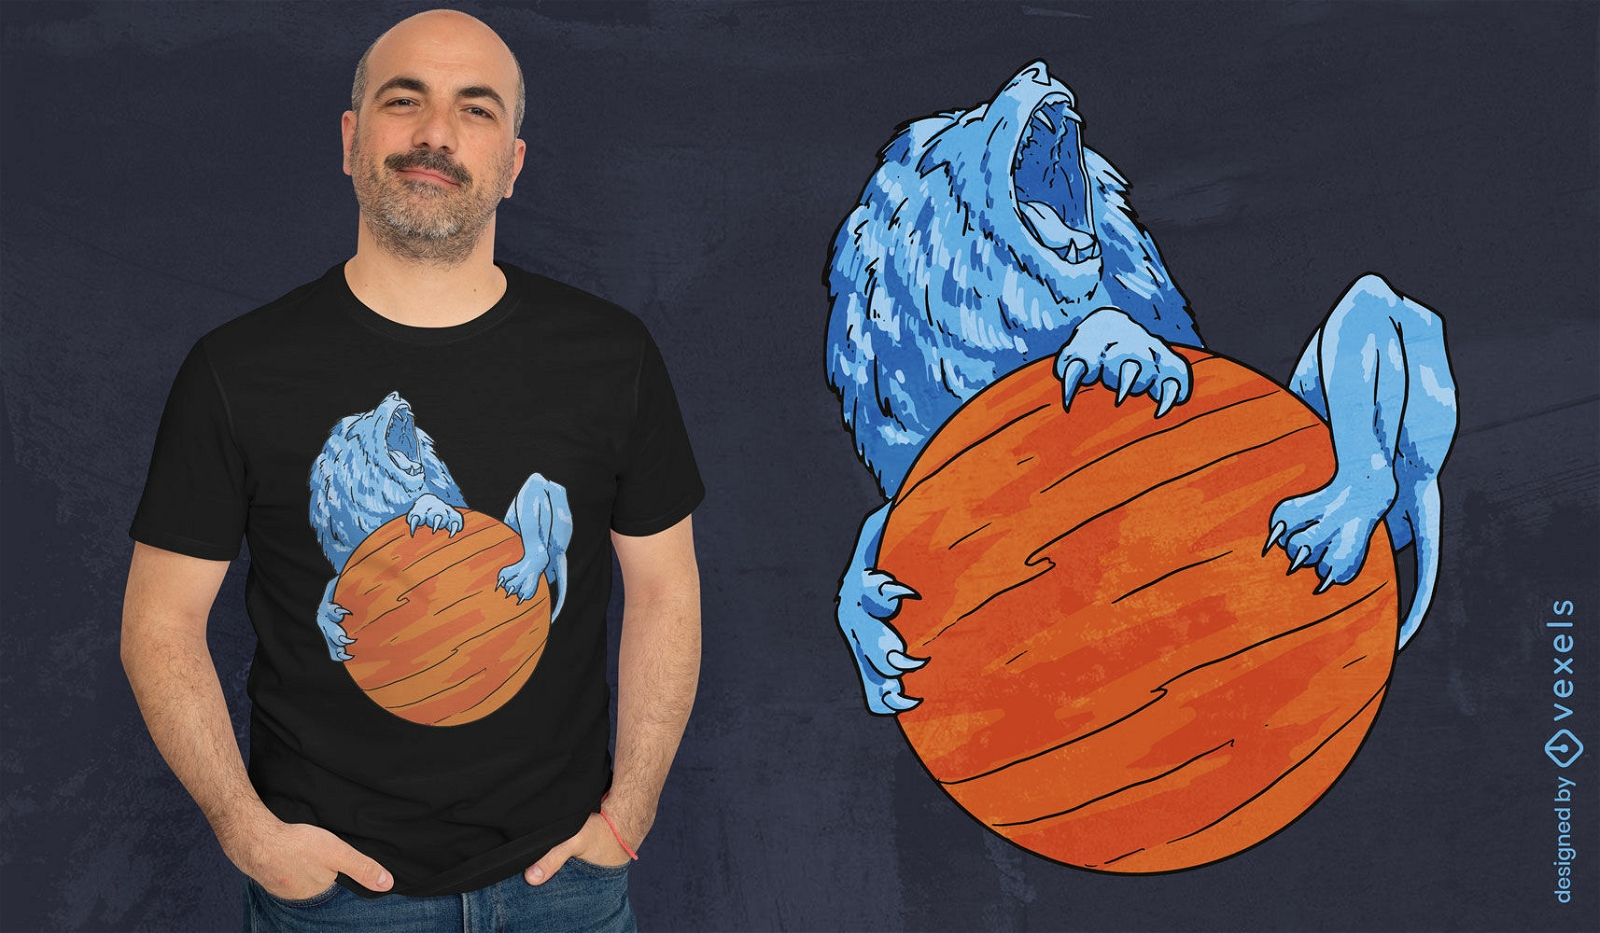 Lion on a planet t-shirt design